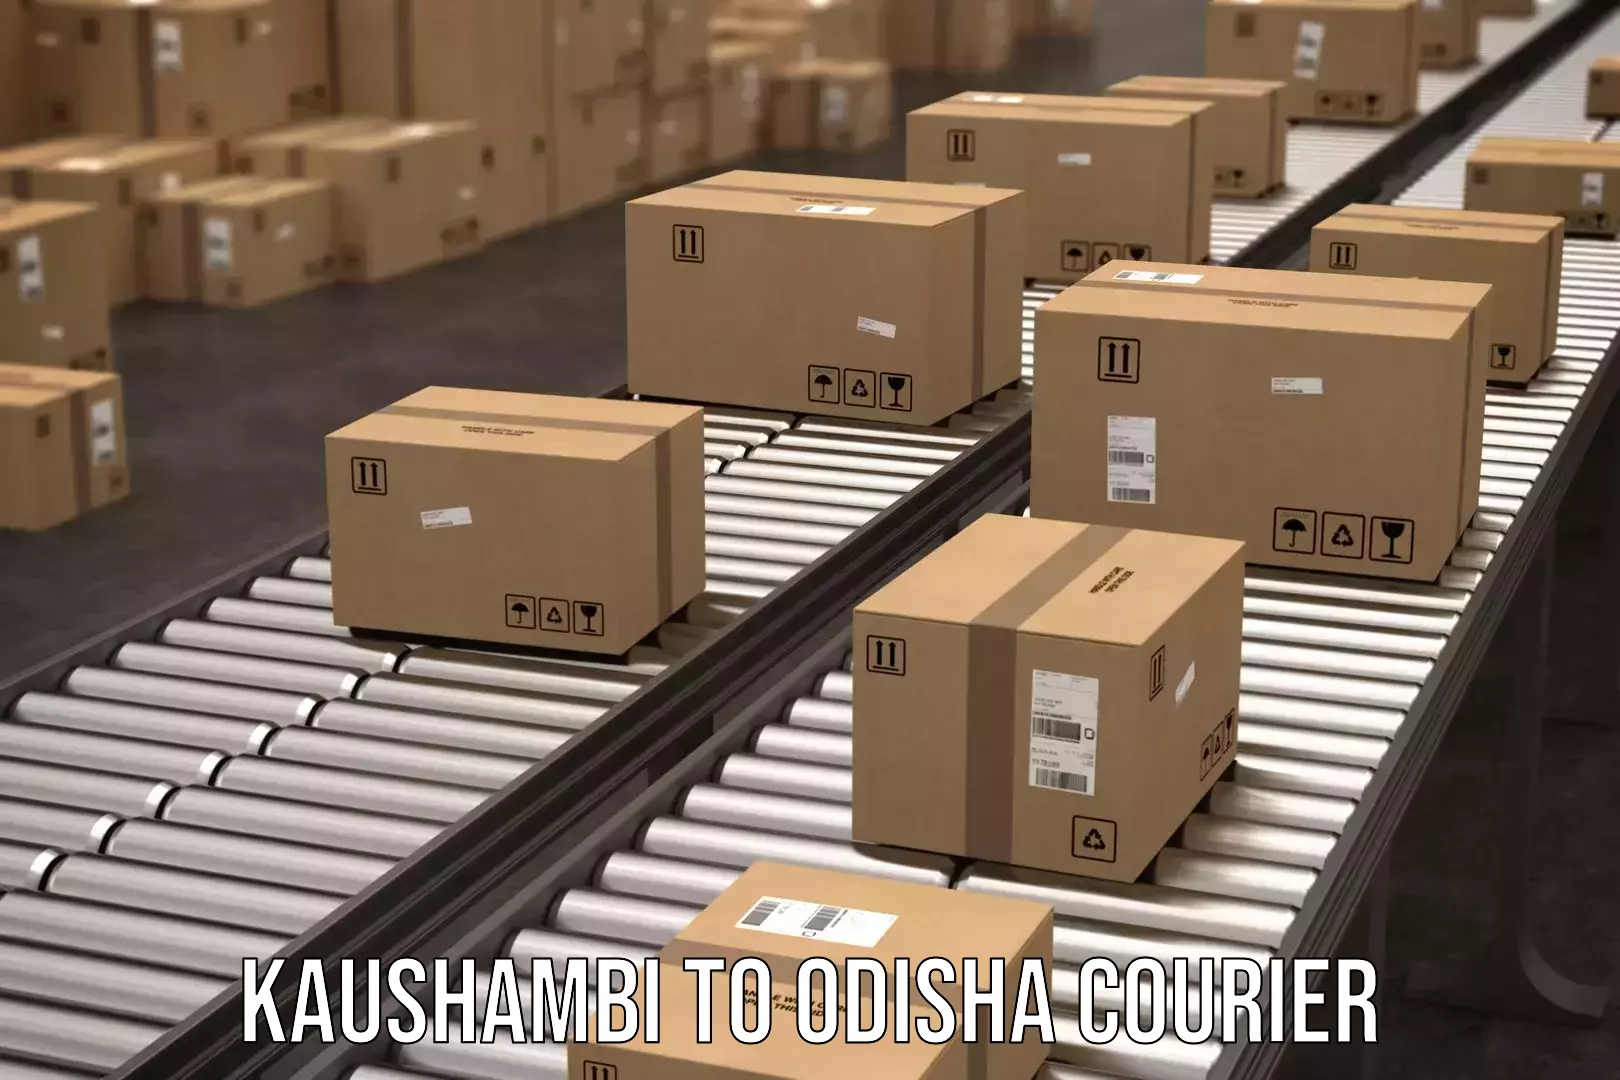 Optimized delivery routes Kaushambi to Tirtol